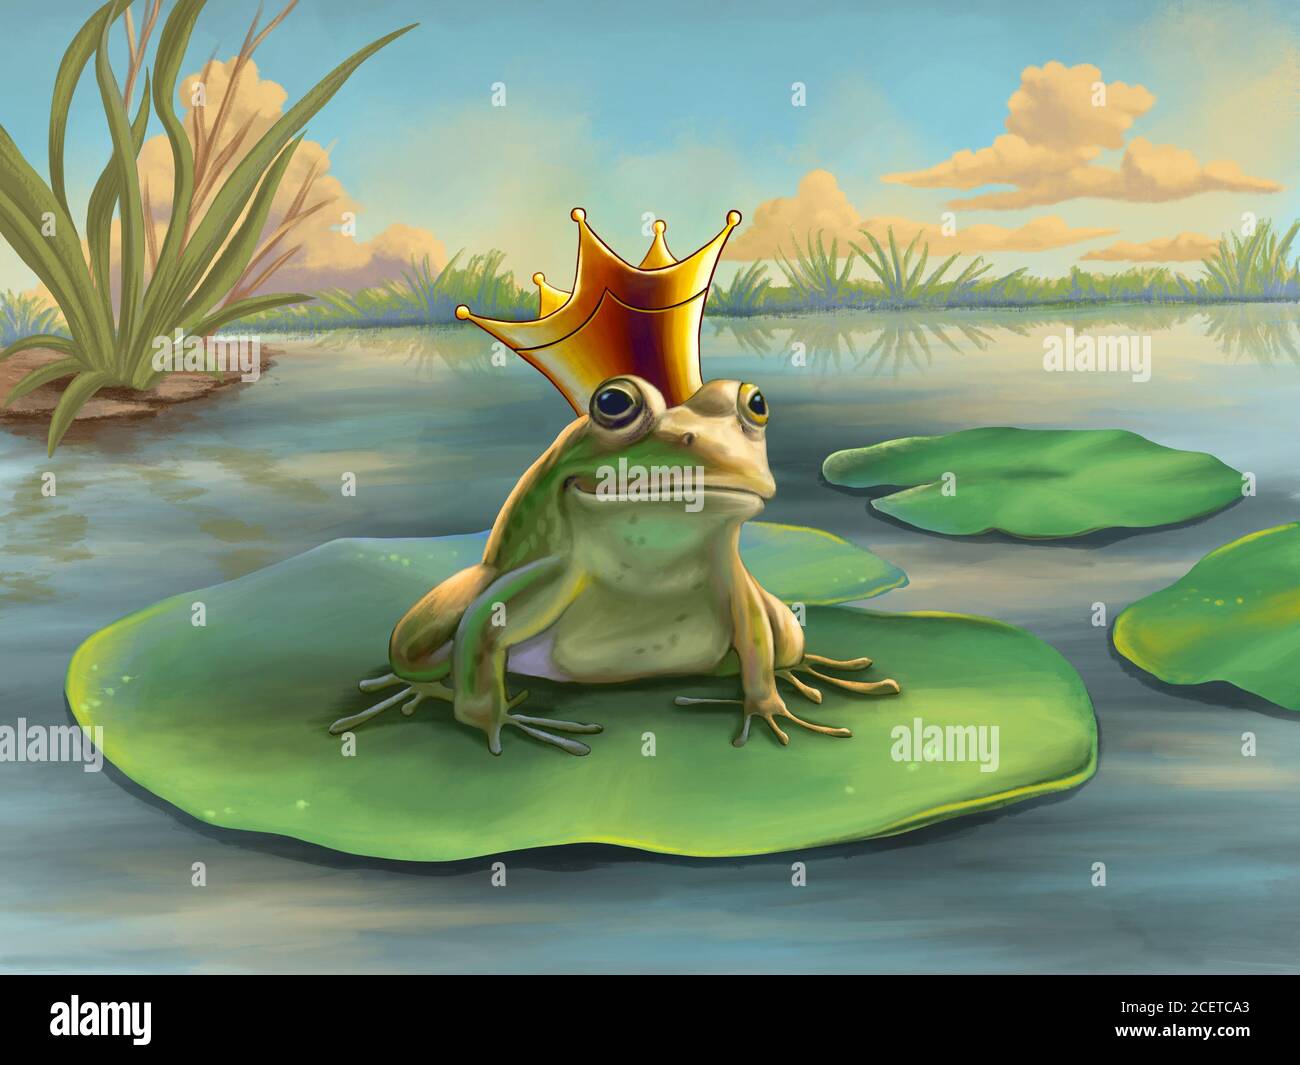 El príncipe de la rana espera en un lirio del agua. Ilustración digital. Foto de stock